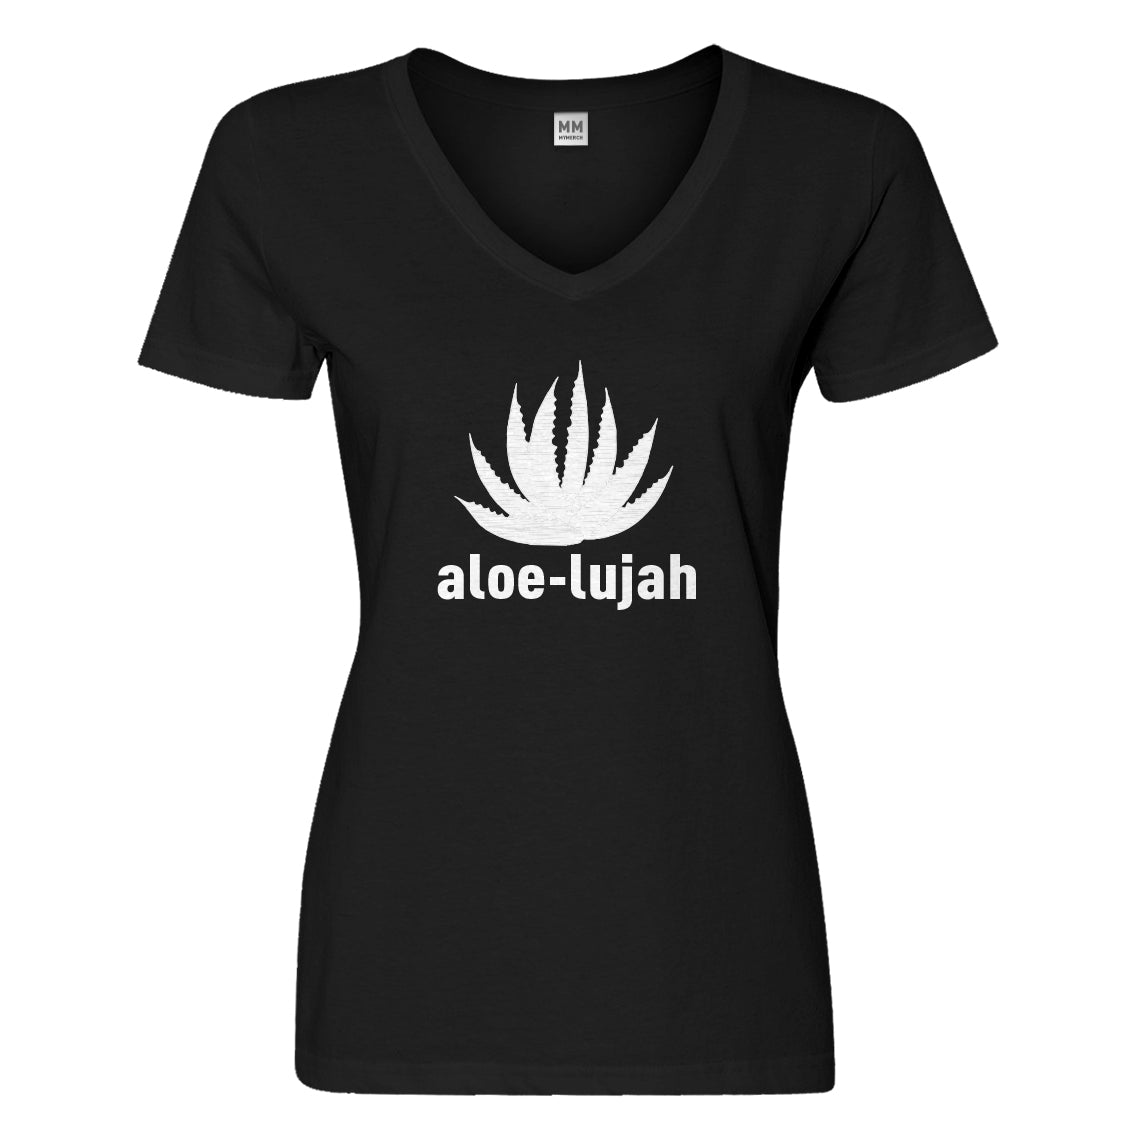 Womens Aloe-lujah Vneck T-shirt